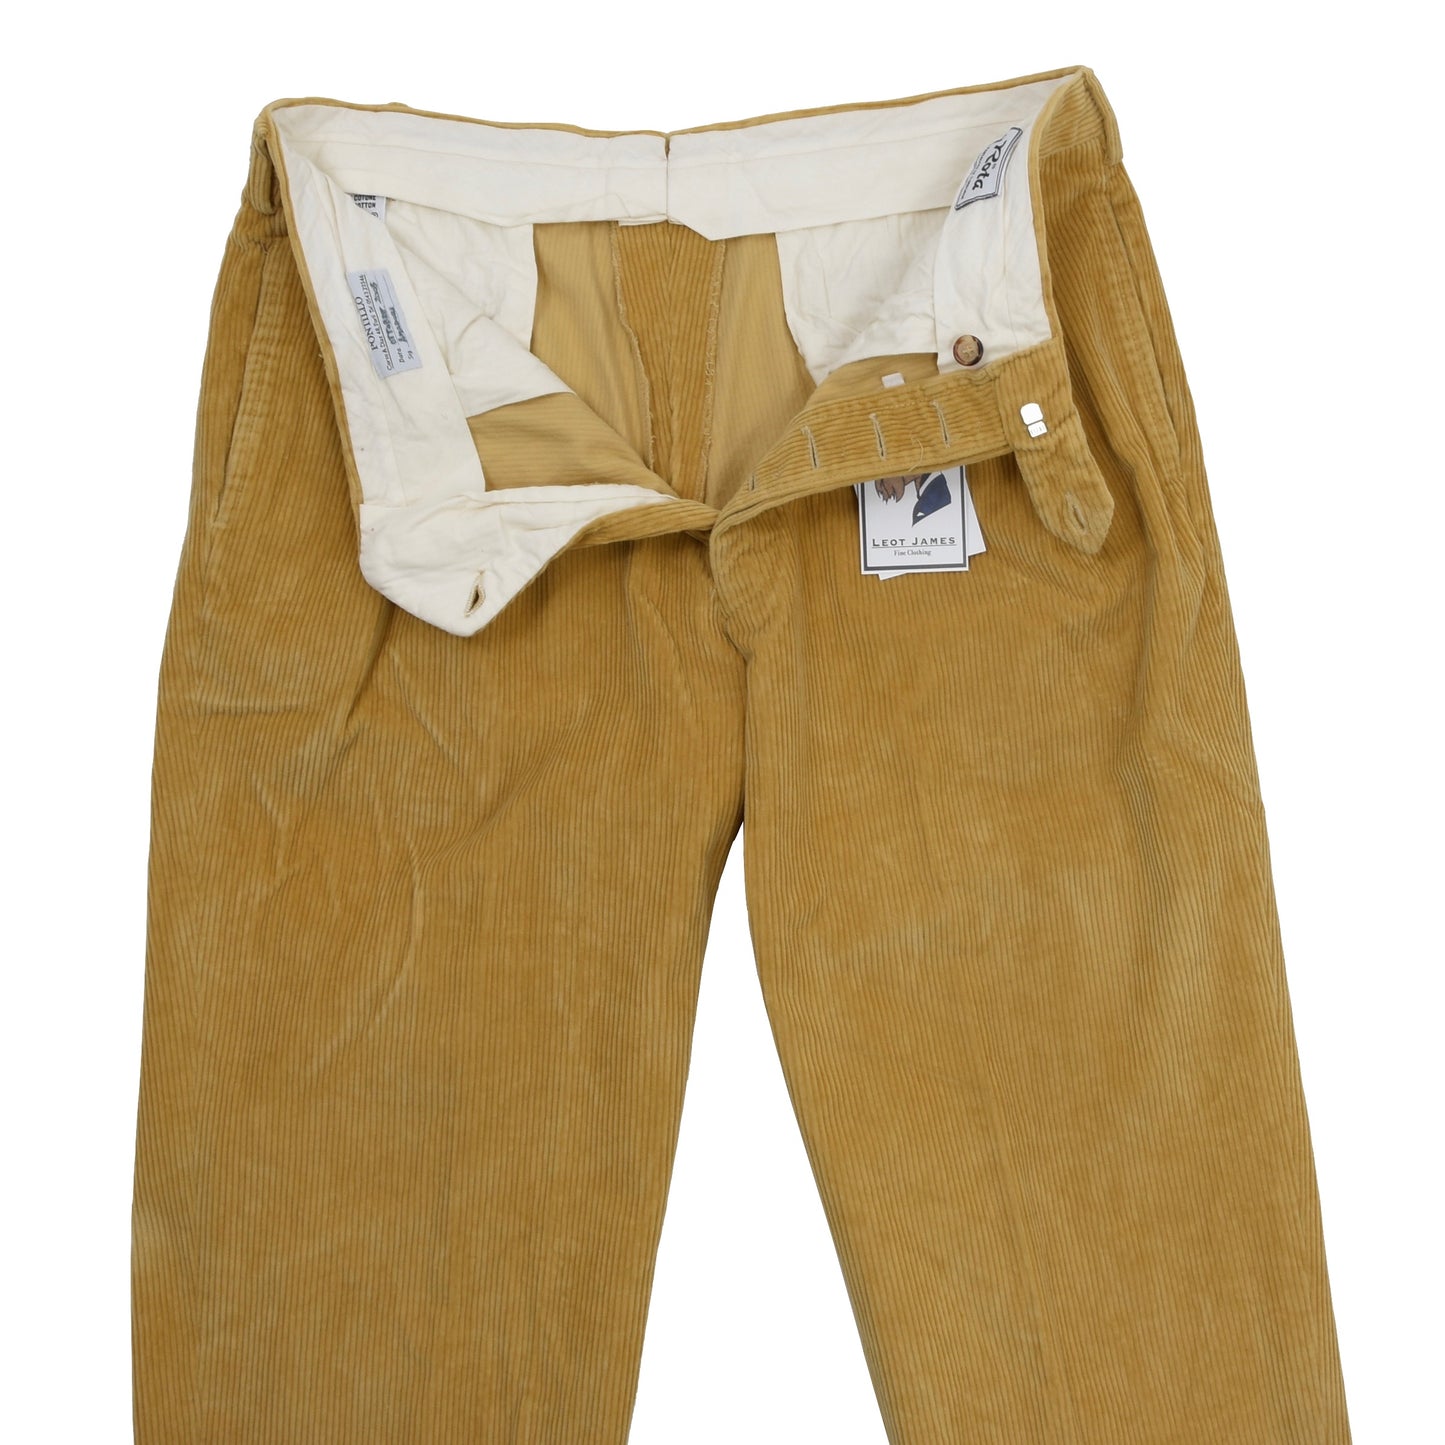 Rota Sport Corduroy Cotton Pants Size 52 - Tan